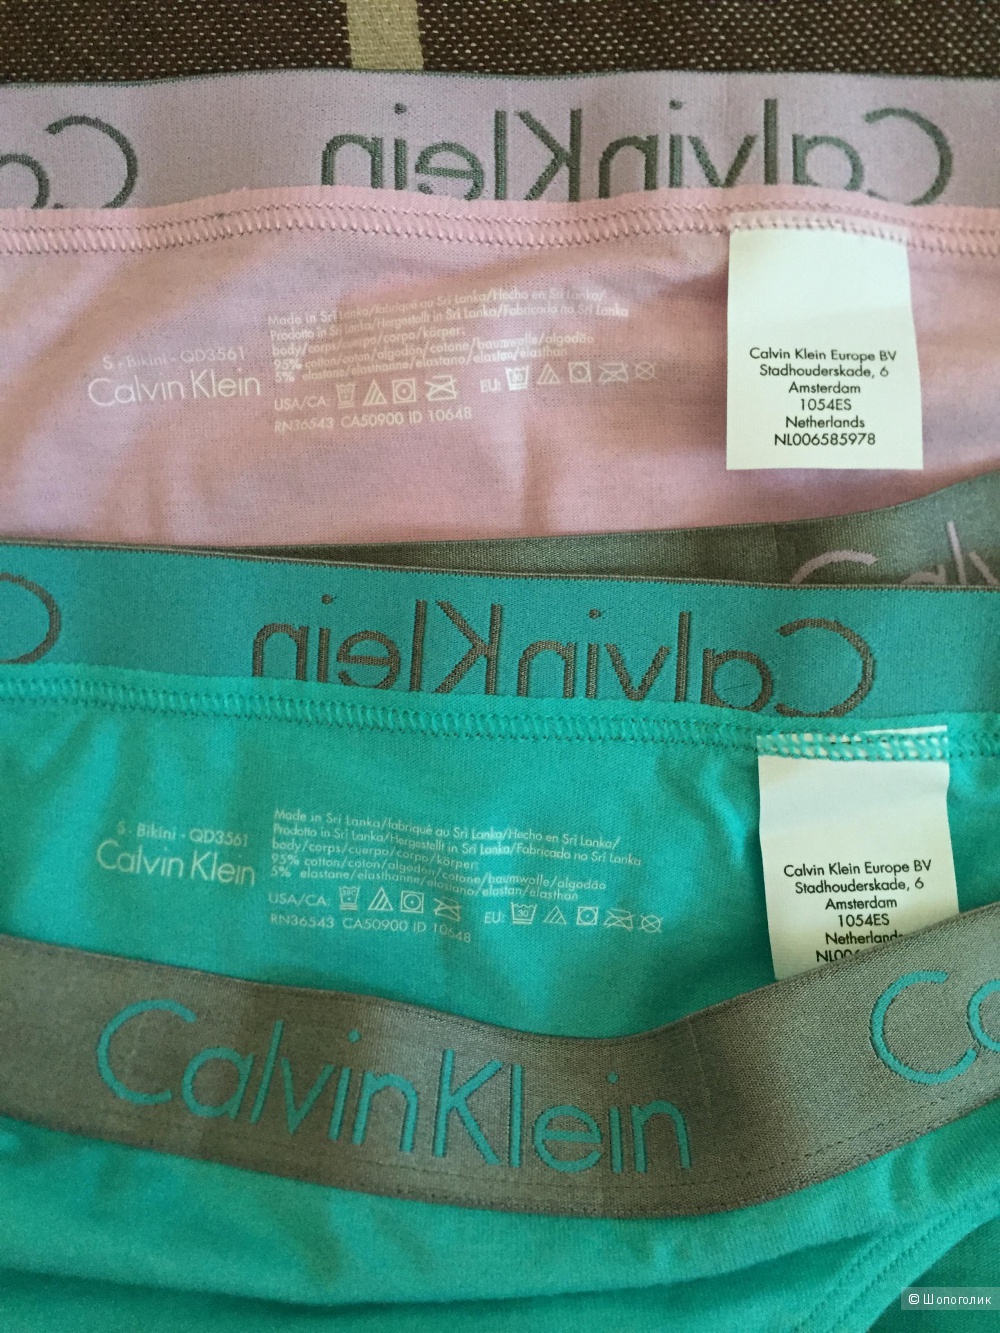 Два набора трусов Calvin Klein